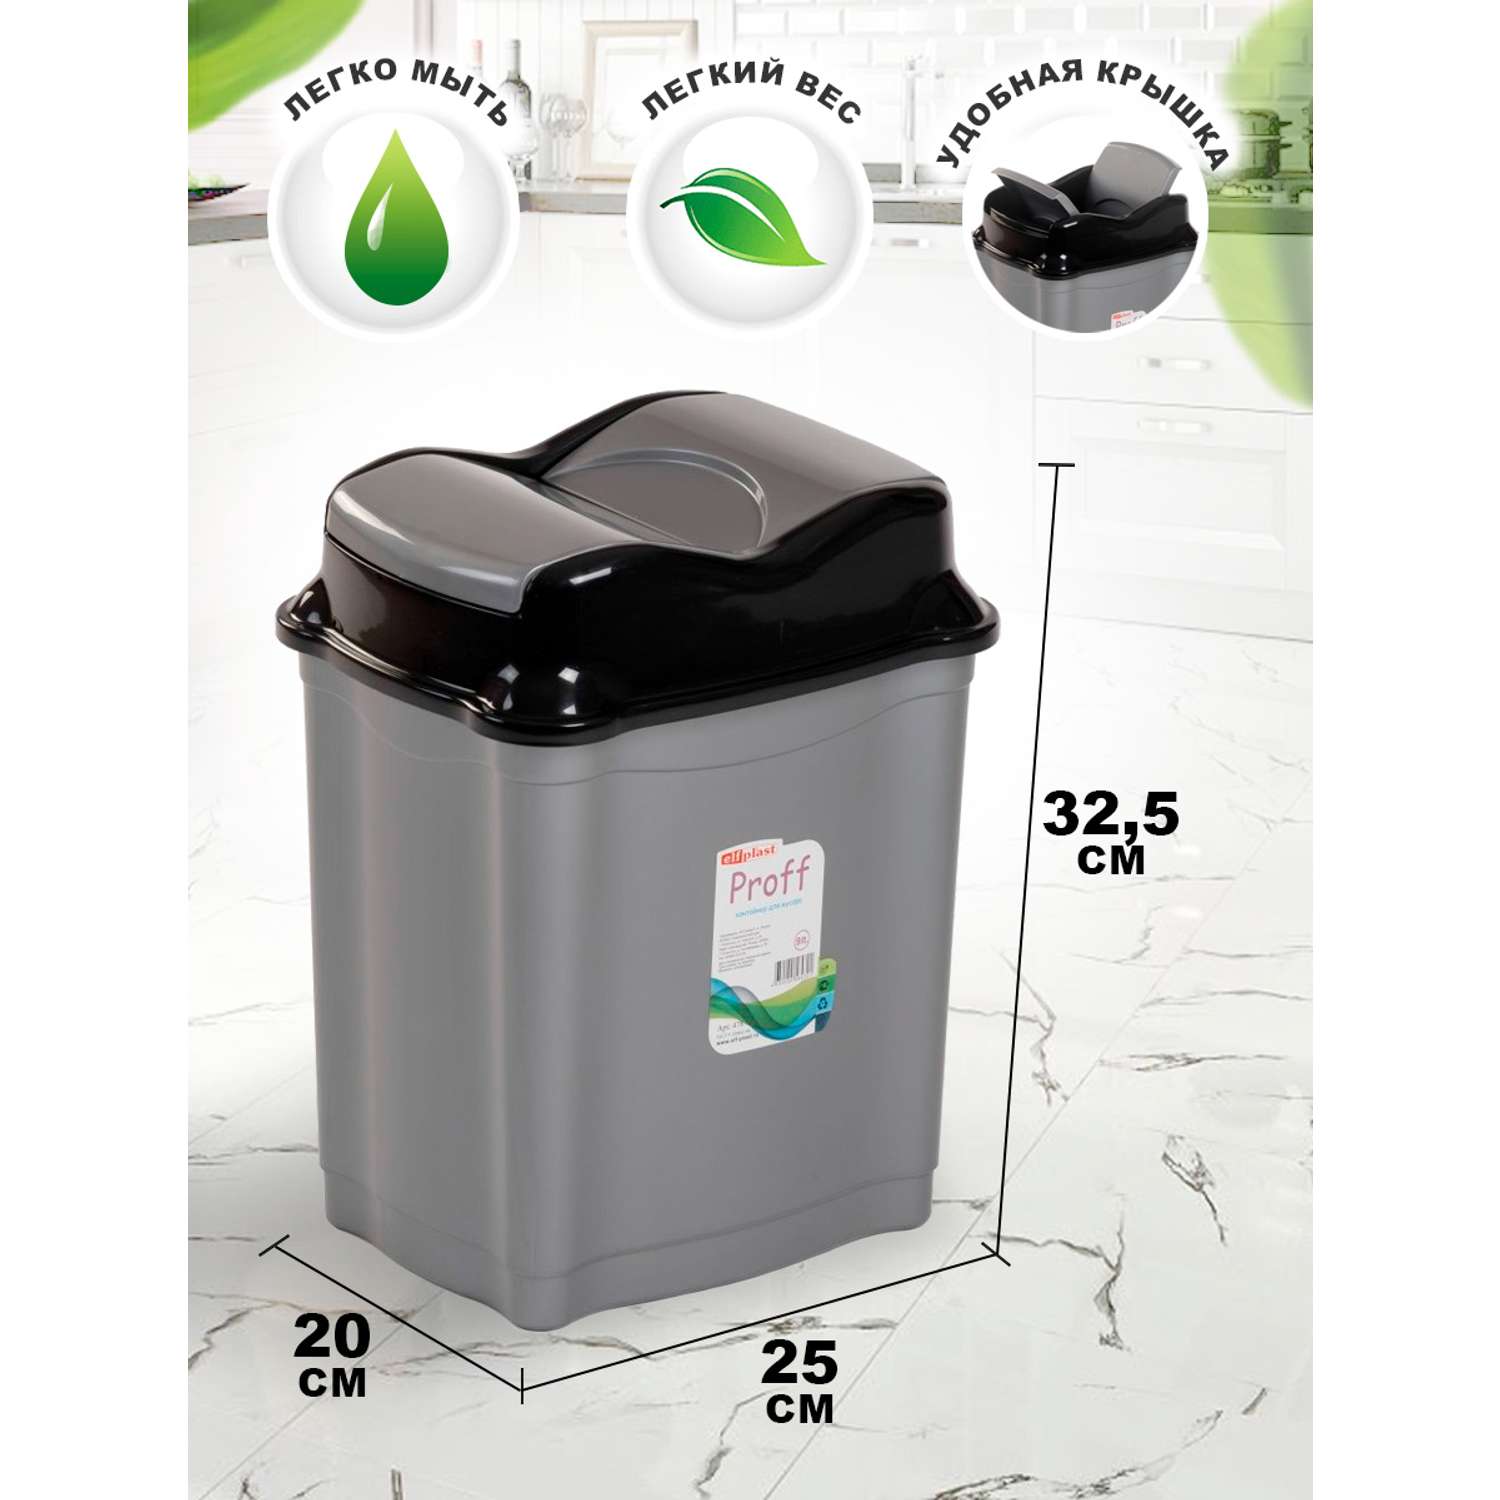 Контейнер elfplast Proff для мусора 9 литров серый черный - фото 2